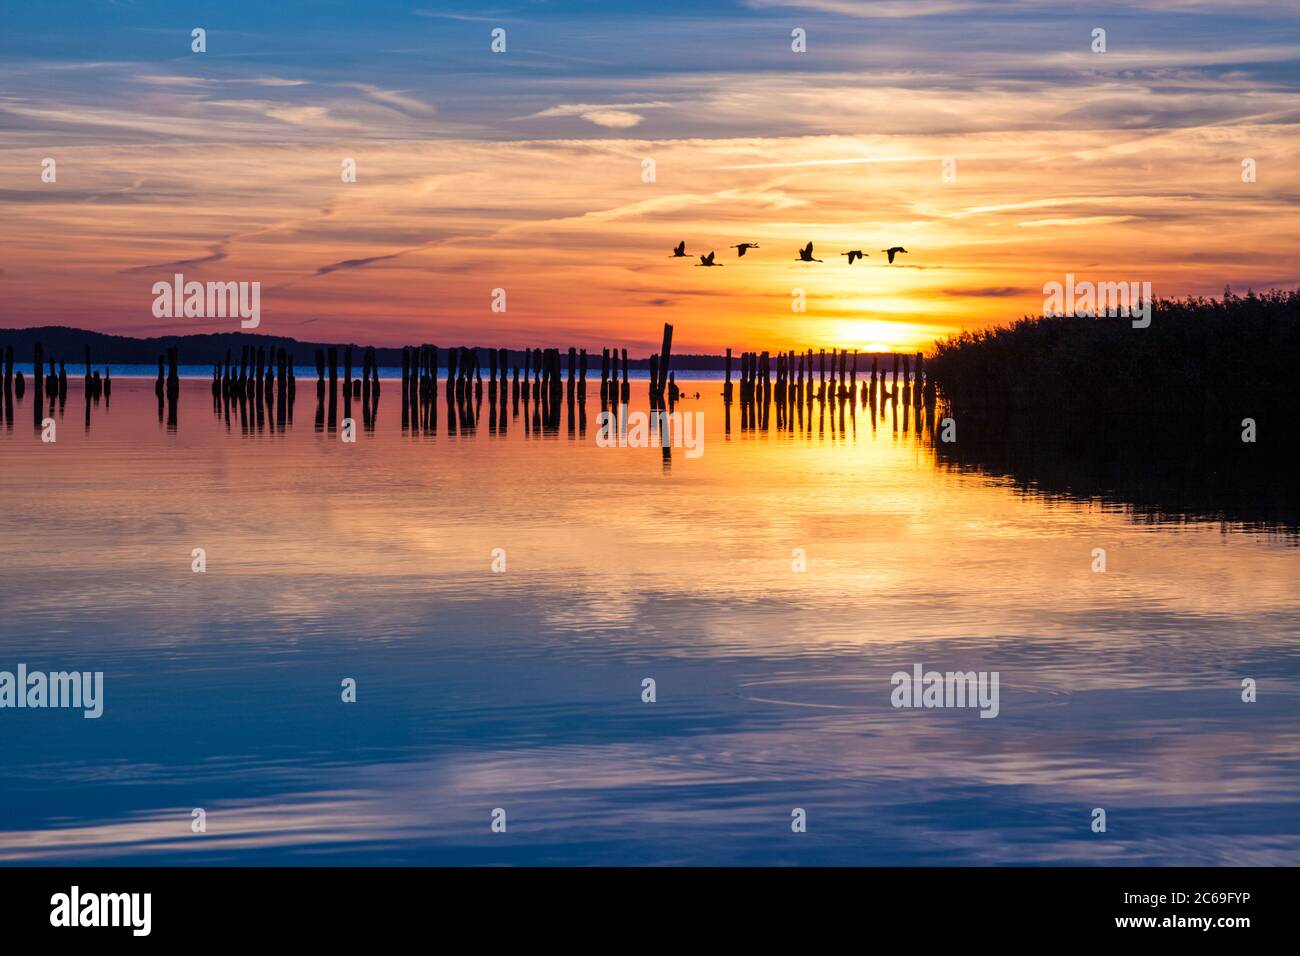 Rebaño de grúas en vuelo al atardecer sobre la laguna Jasmunder Bodden, Ruegen, Alemania Foto de stock